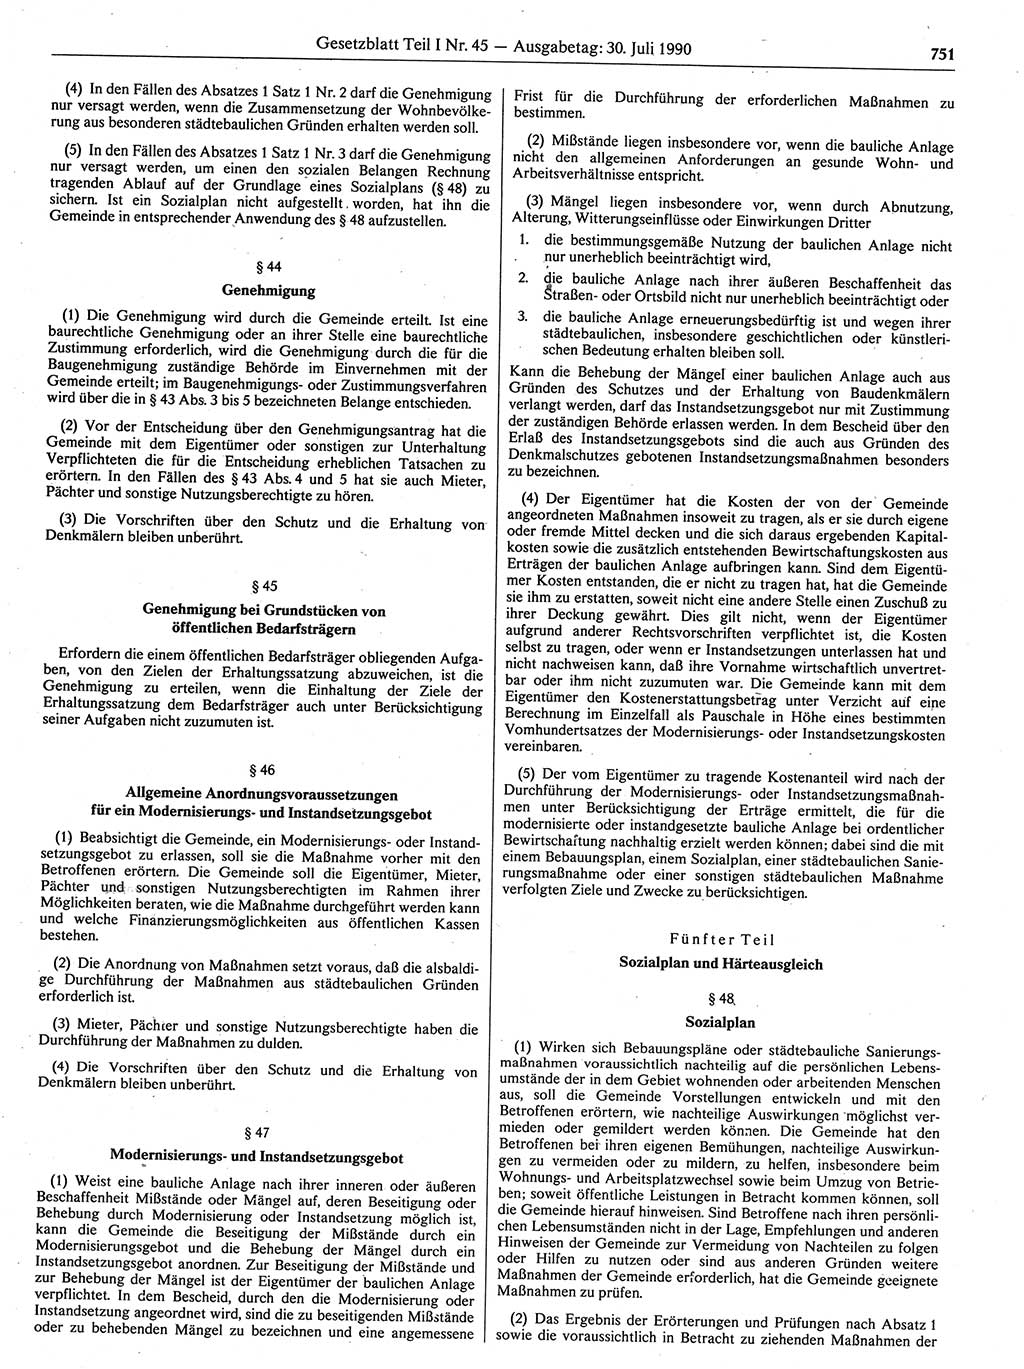 Gesetzblatt (GBl.) der Deutschen Demokratischen Republik (DDR) Teil Ⅰ 1990, Seite 751 (GBl. DDR Ⅰ 1990, S. 751)